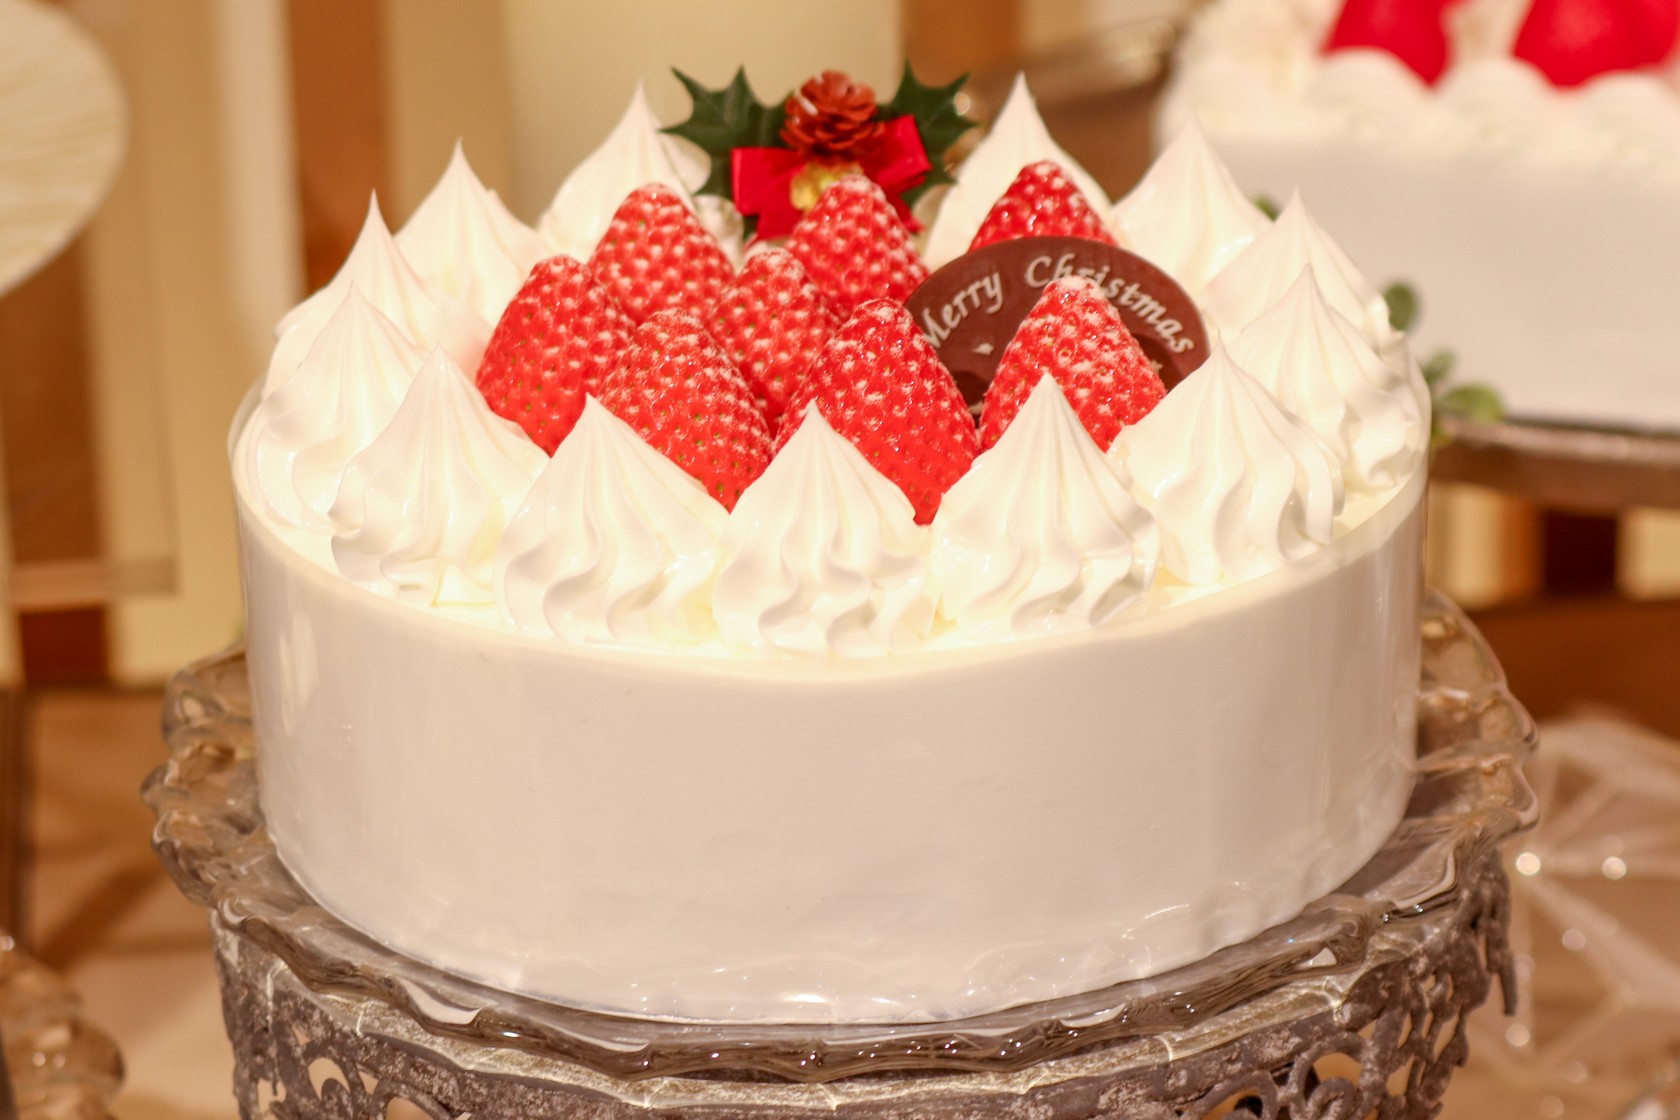 もうすぐ令和初のクリスマス イトーヨーカドーの本格ケーキでお祝いしよう もぐナビニュース もぐナビ